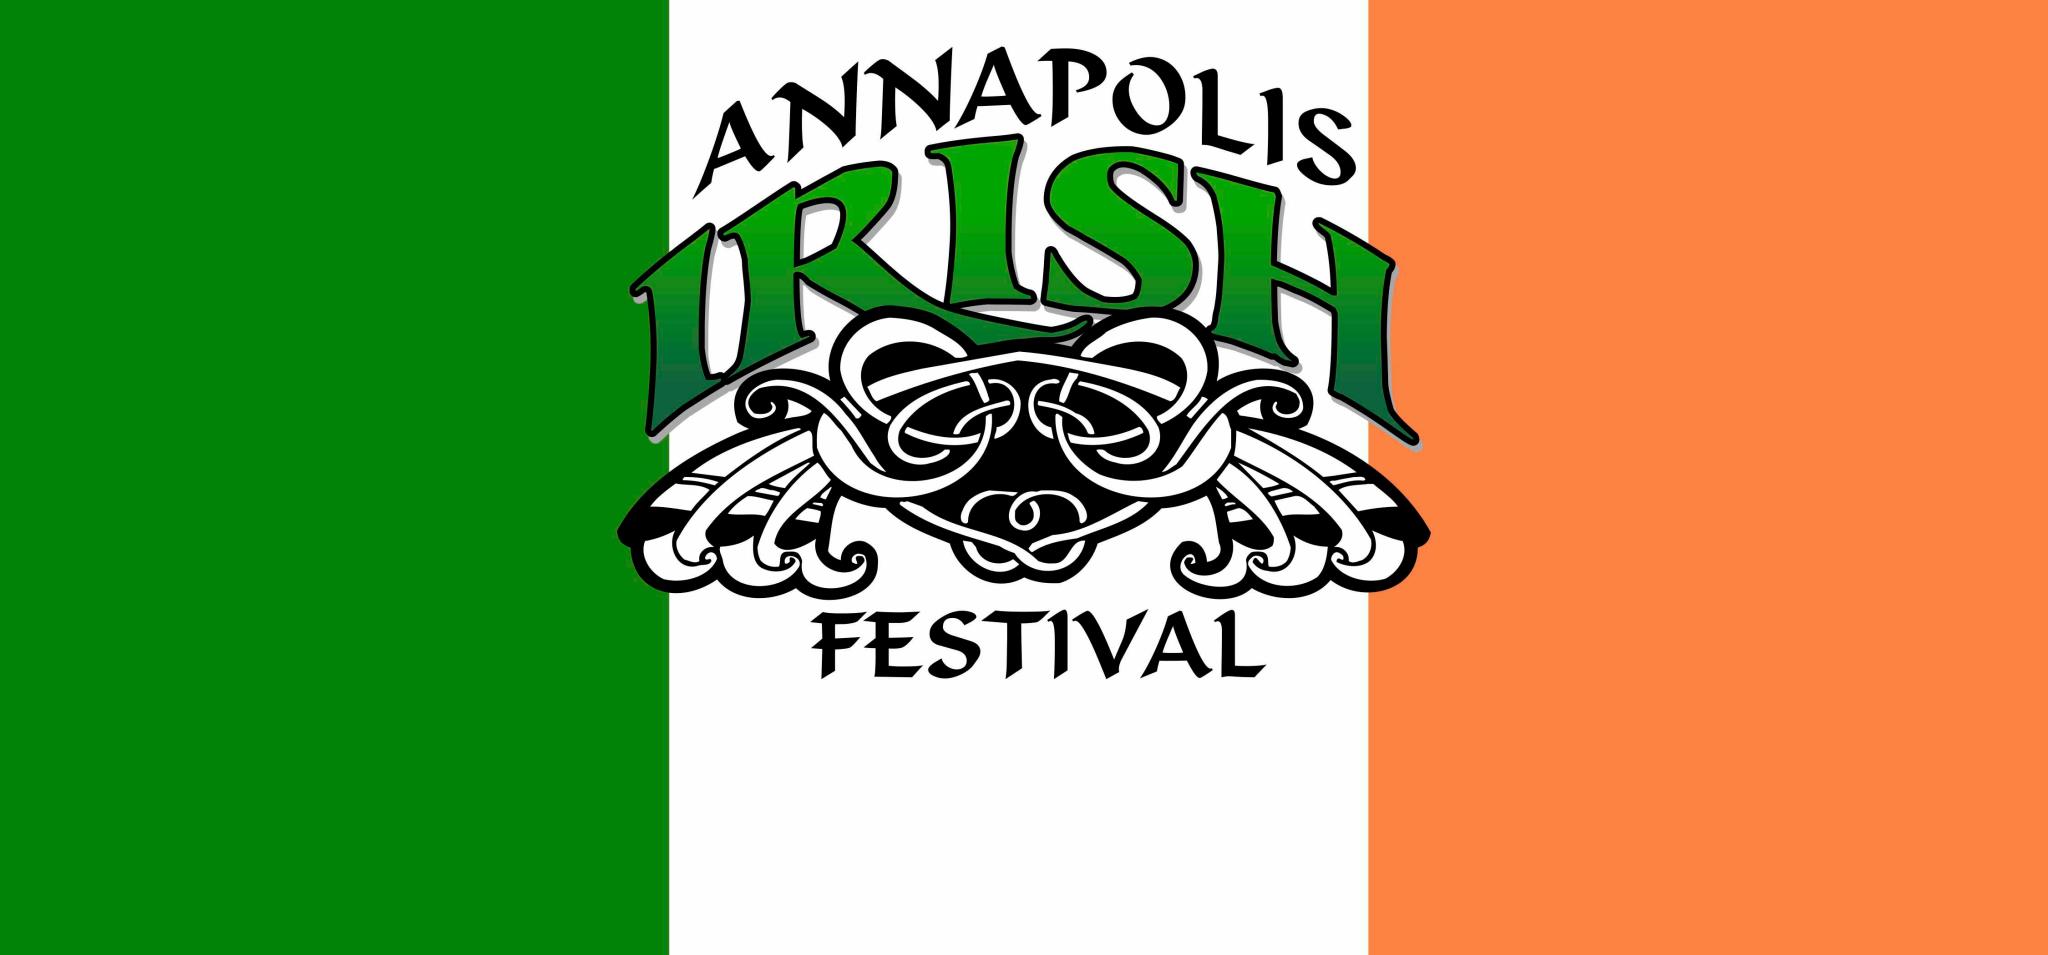 ANNAPOLIS IRISH FESTIVAL